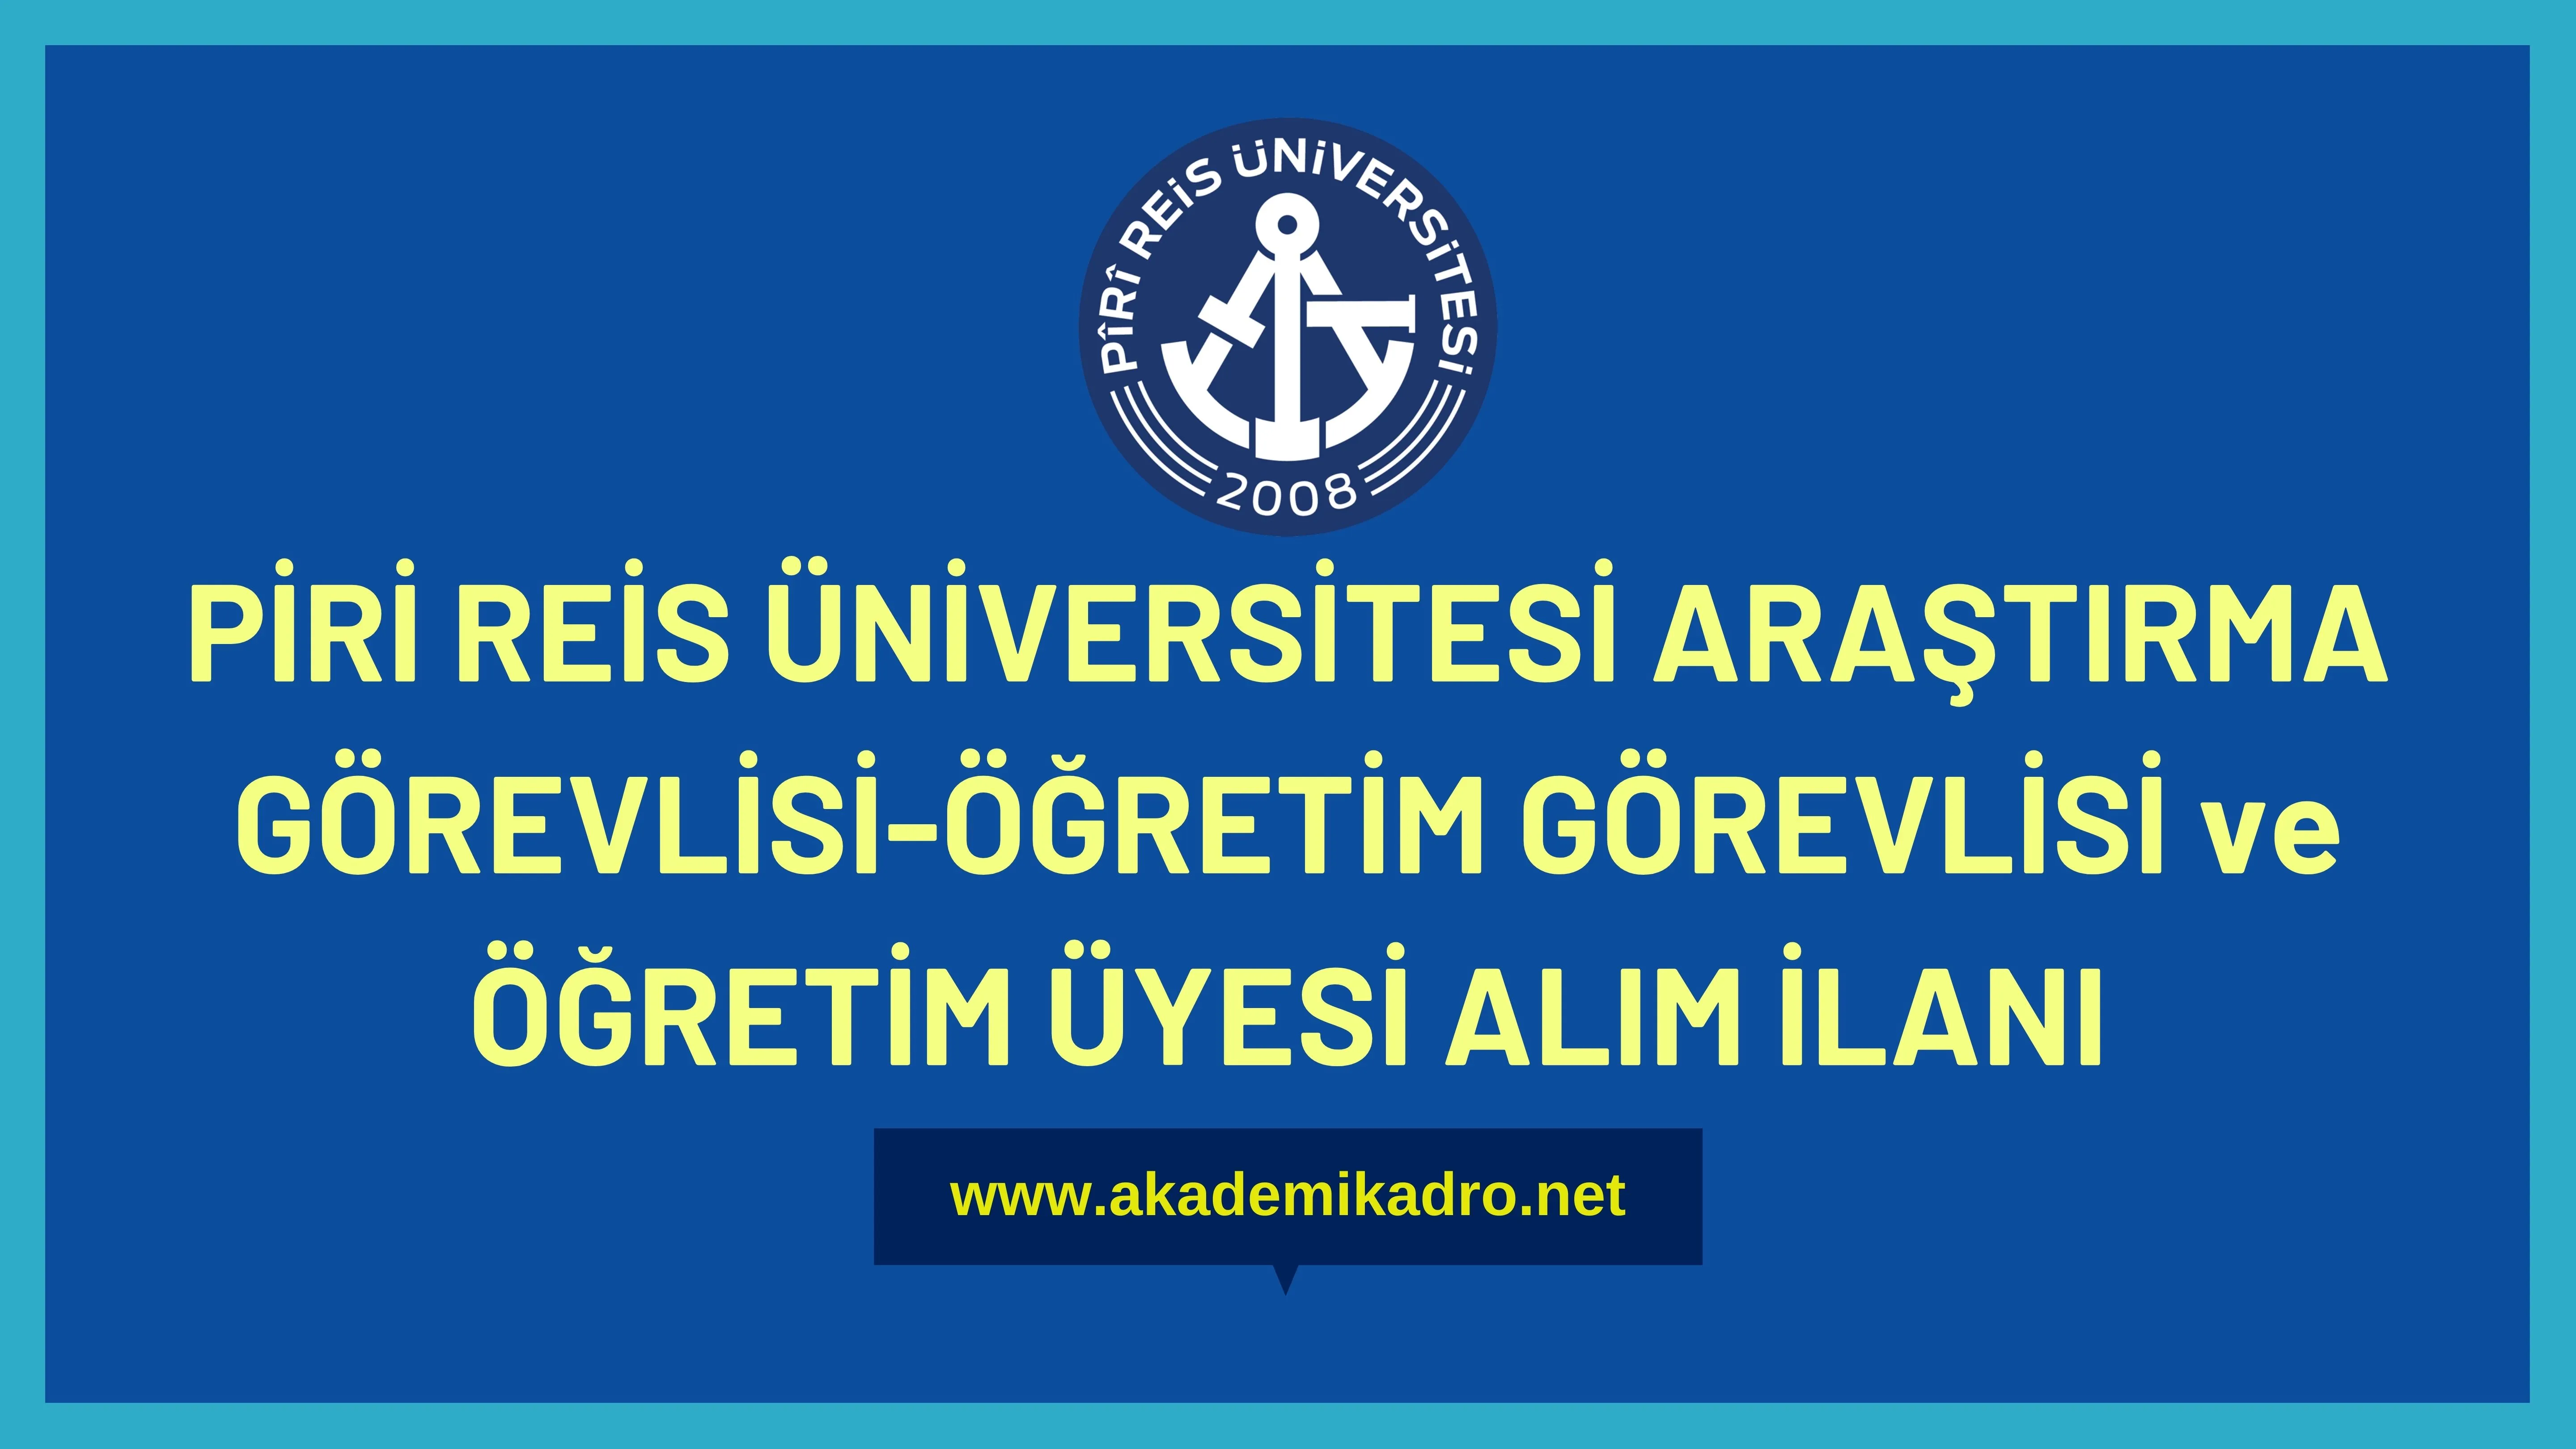 Piri Reis Üniversitesi 13 Araştırma görevlisi, 21 Öğretim görevlisi ve 29 Öğretim üyesi alacak.